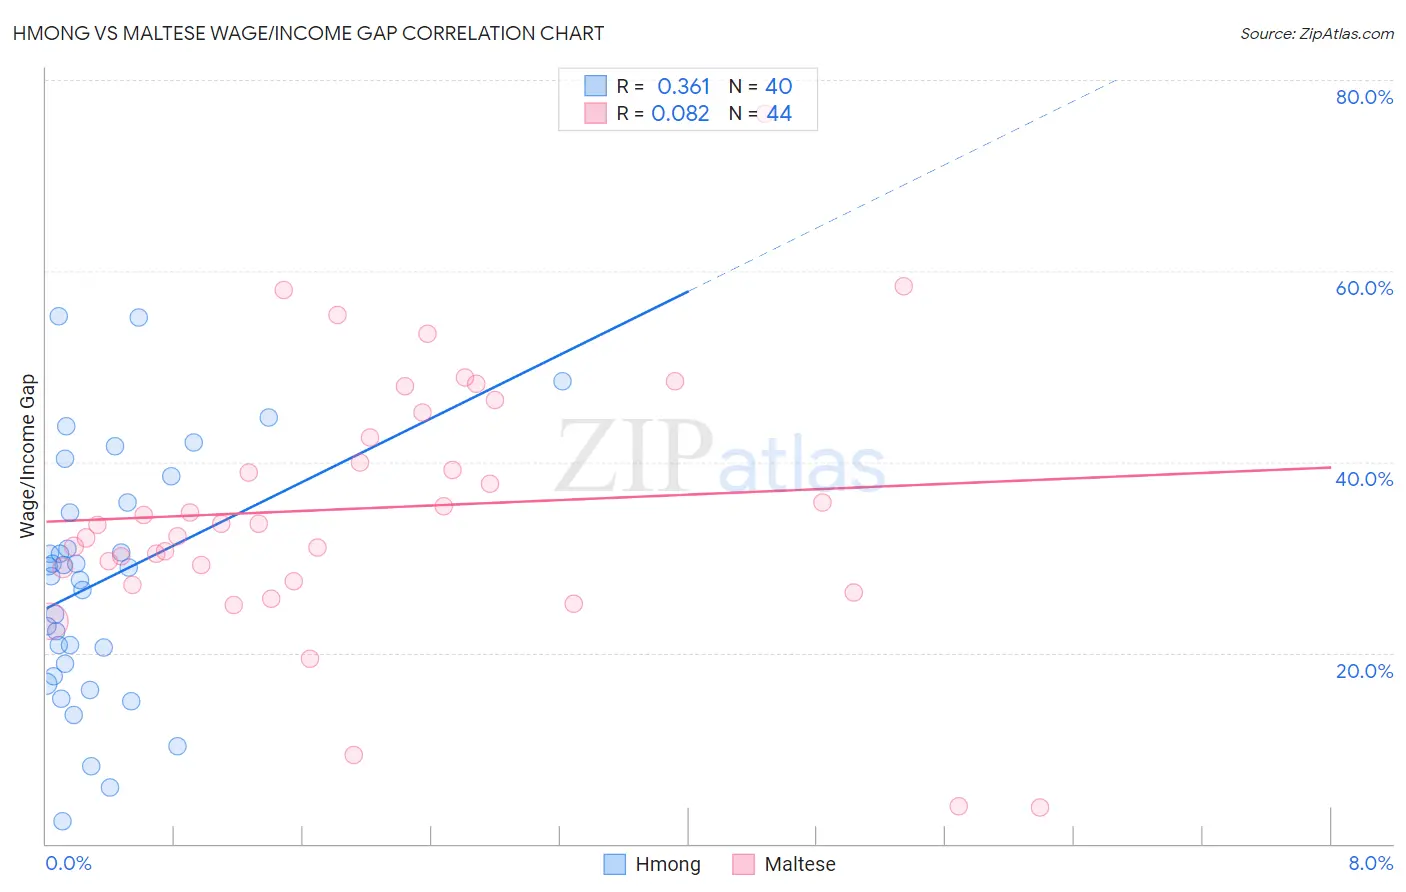 Hmong vs Maltese Wage/Income Gap